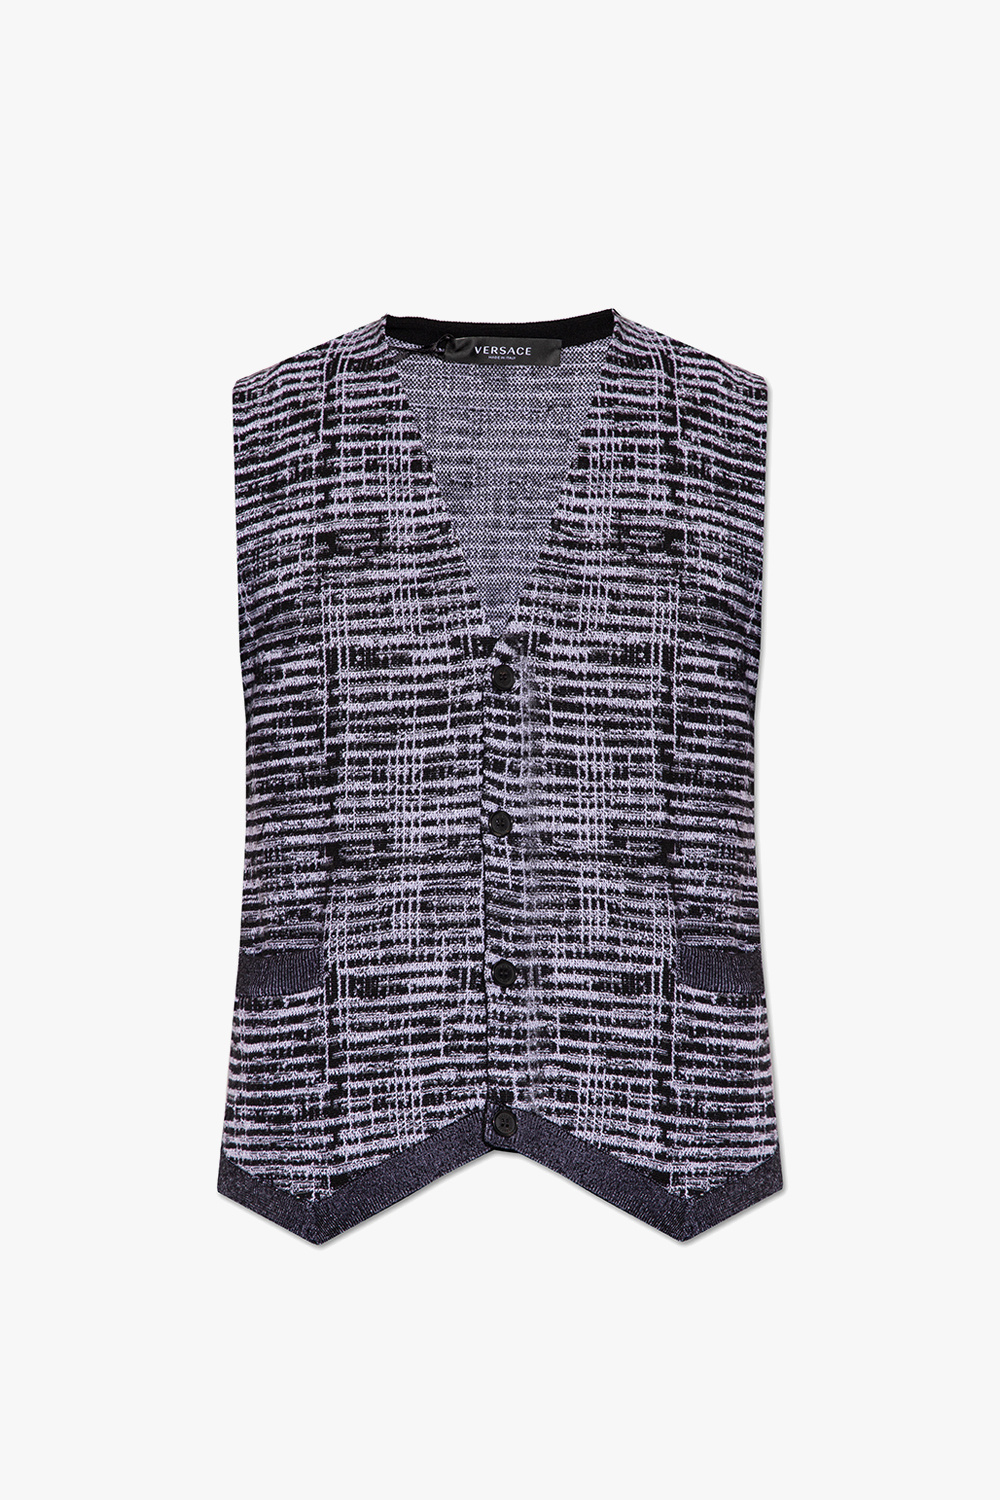 Versace Wool vest